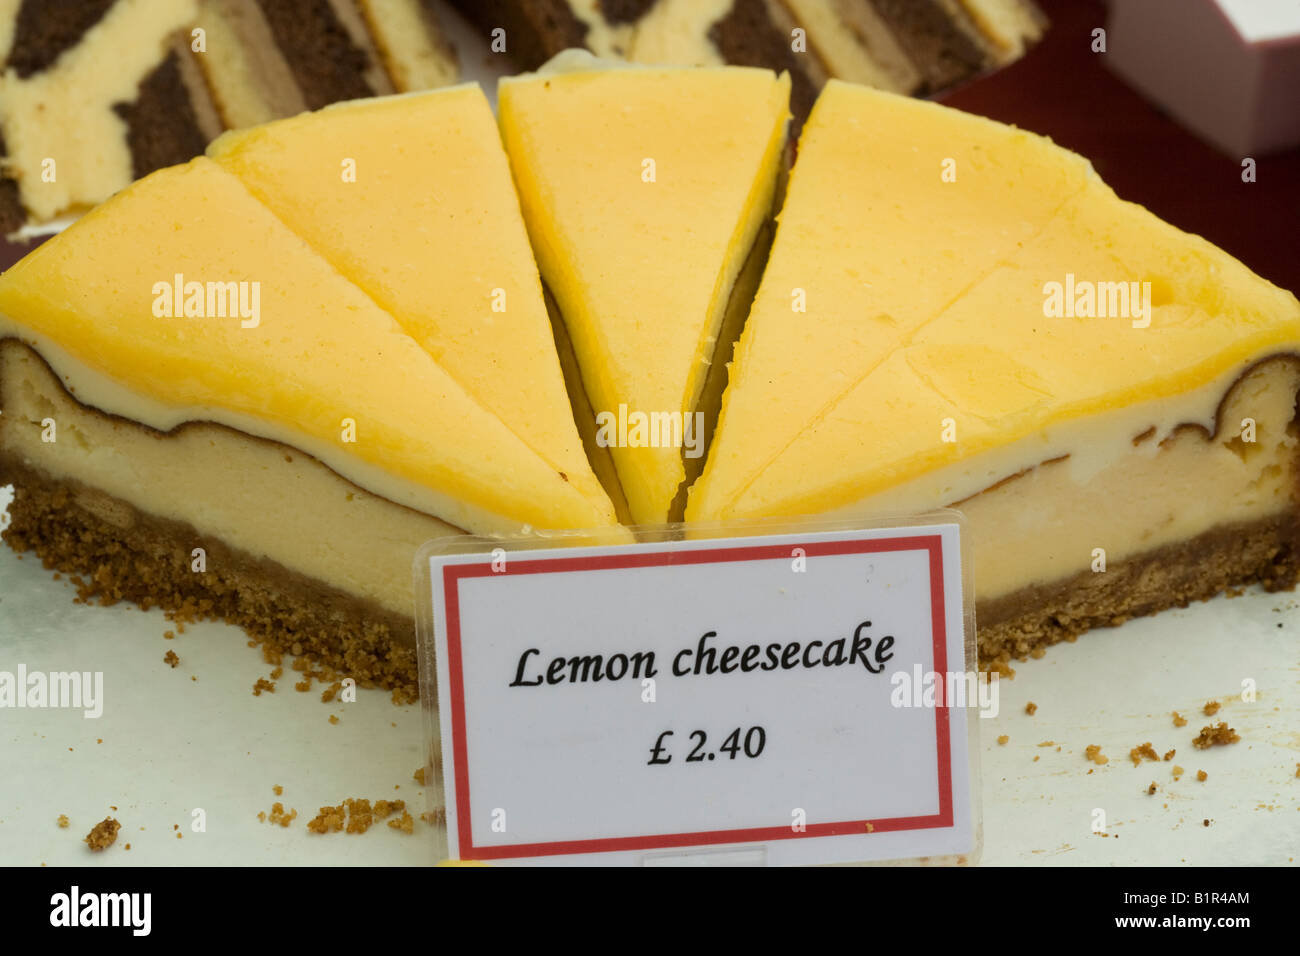 lemon cheese cake Stock Photo